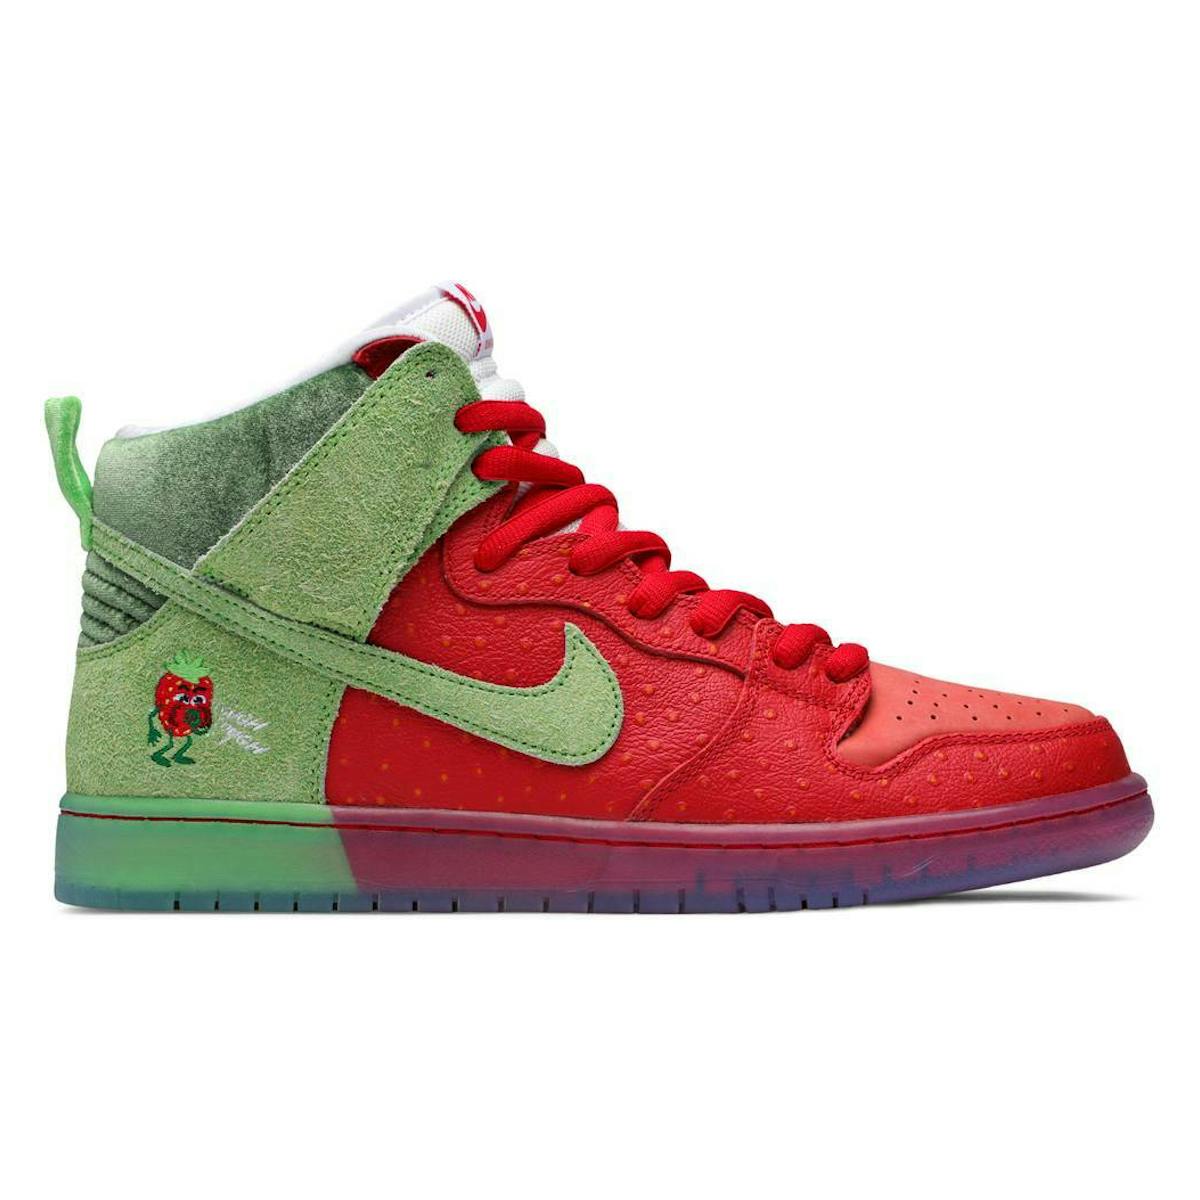 Nike SB Dunk High Pro QS "Strawberry"